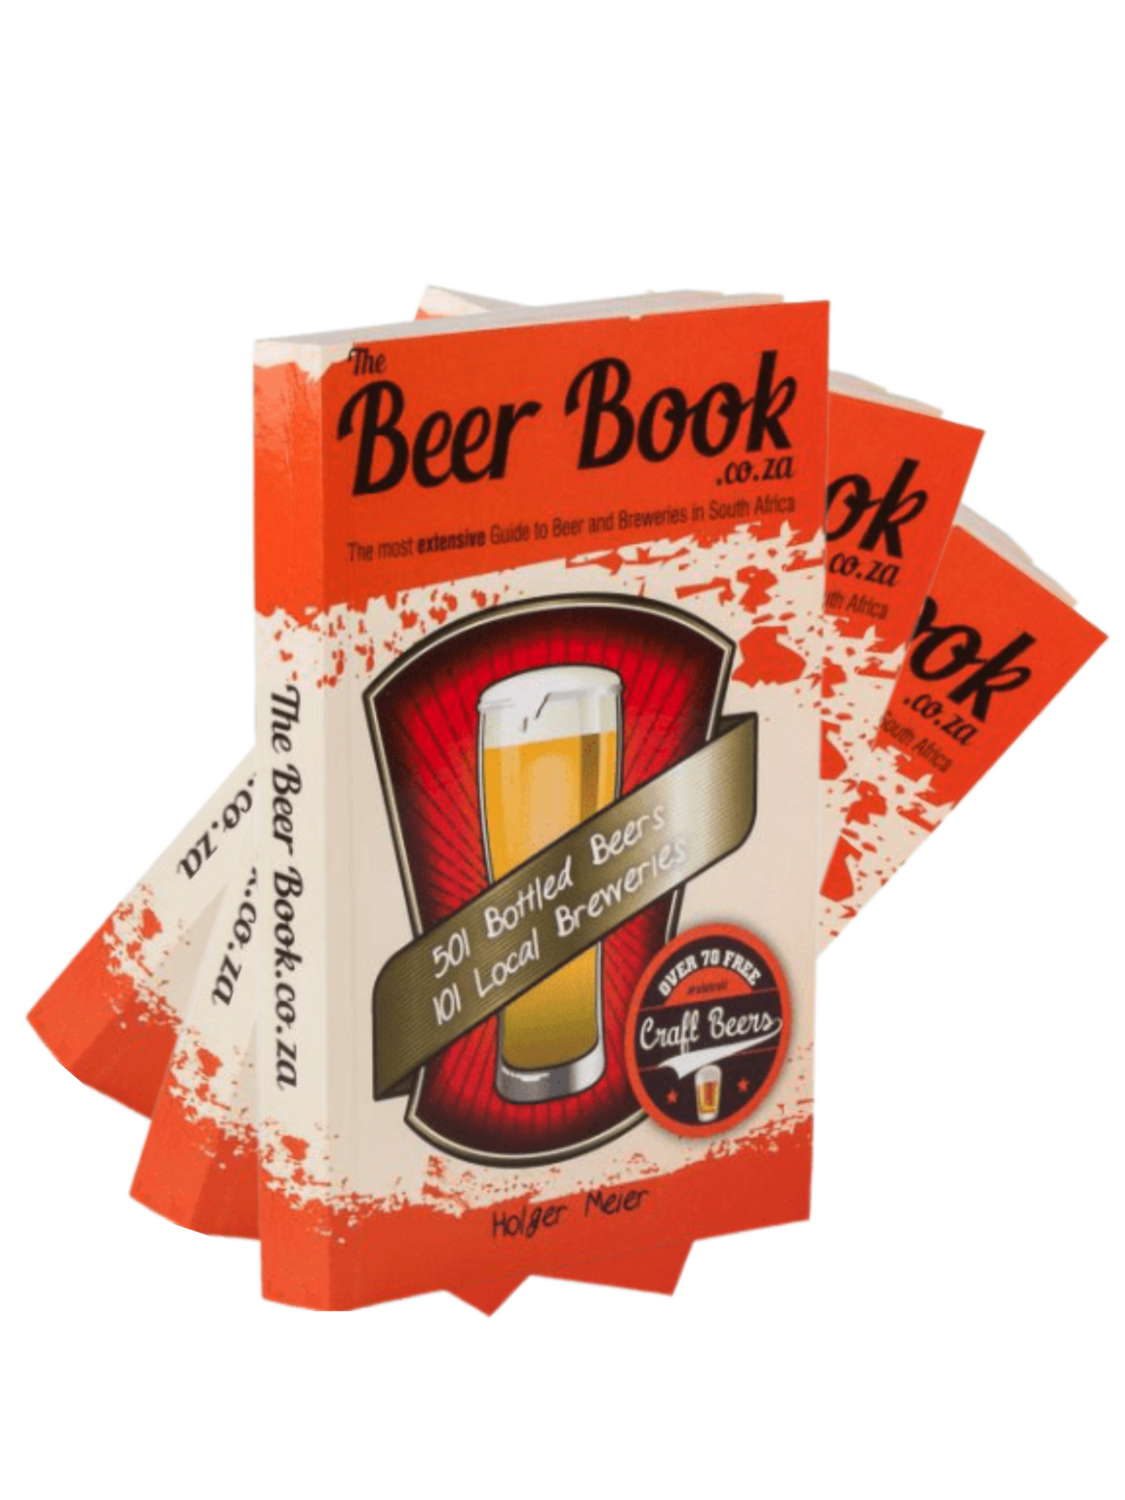 The Beer Book (3 copies)